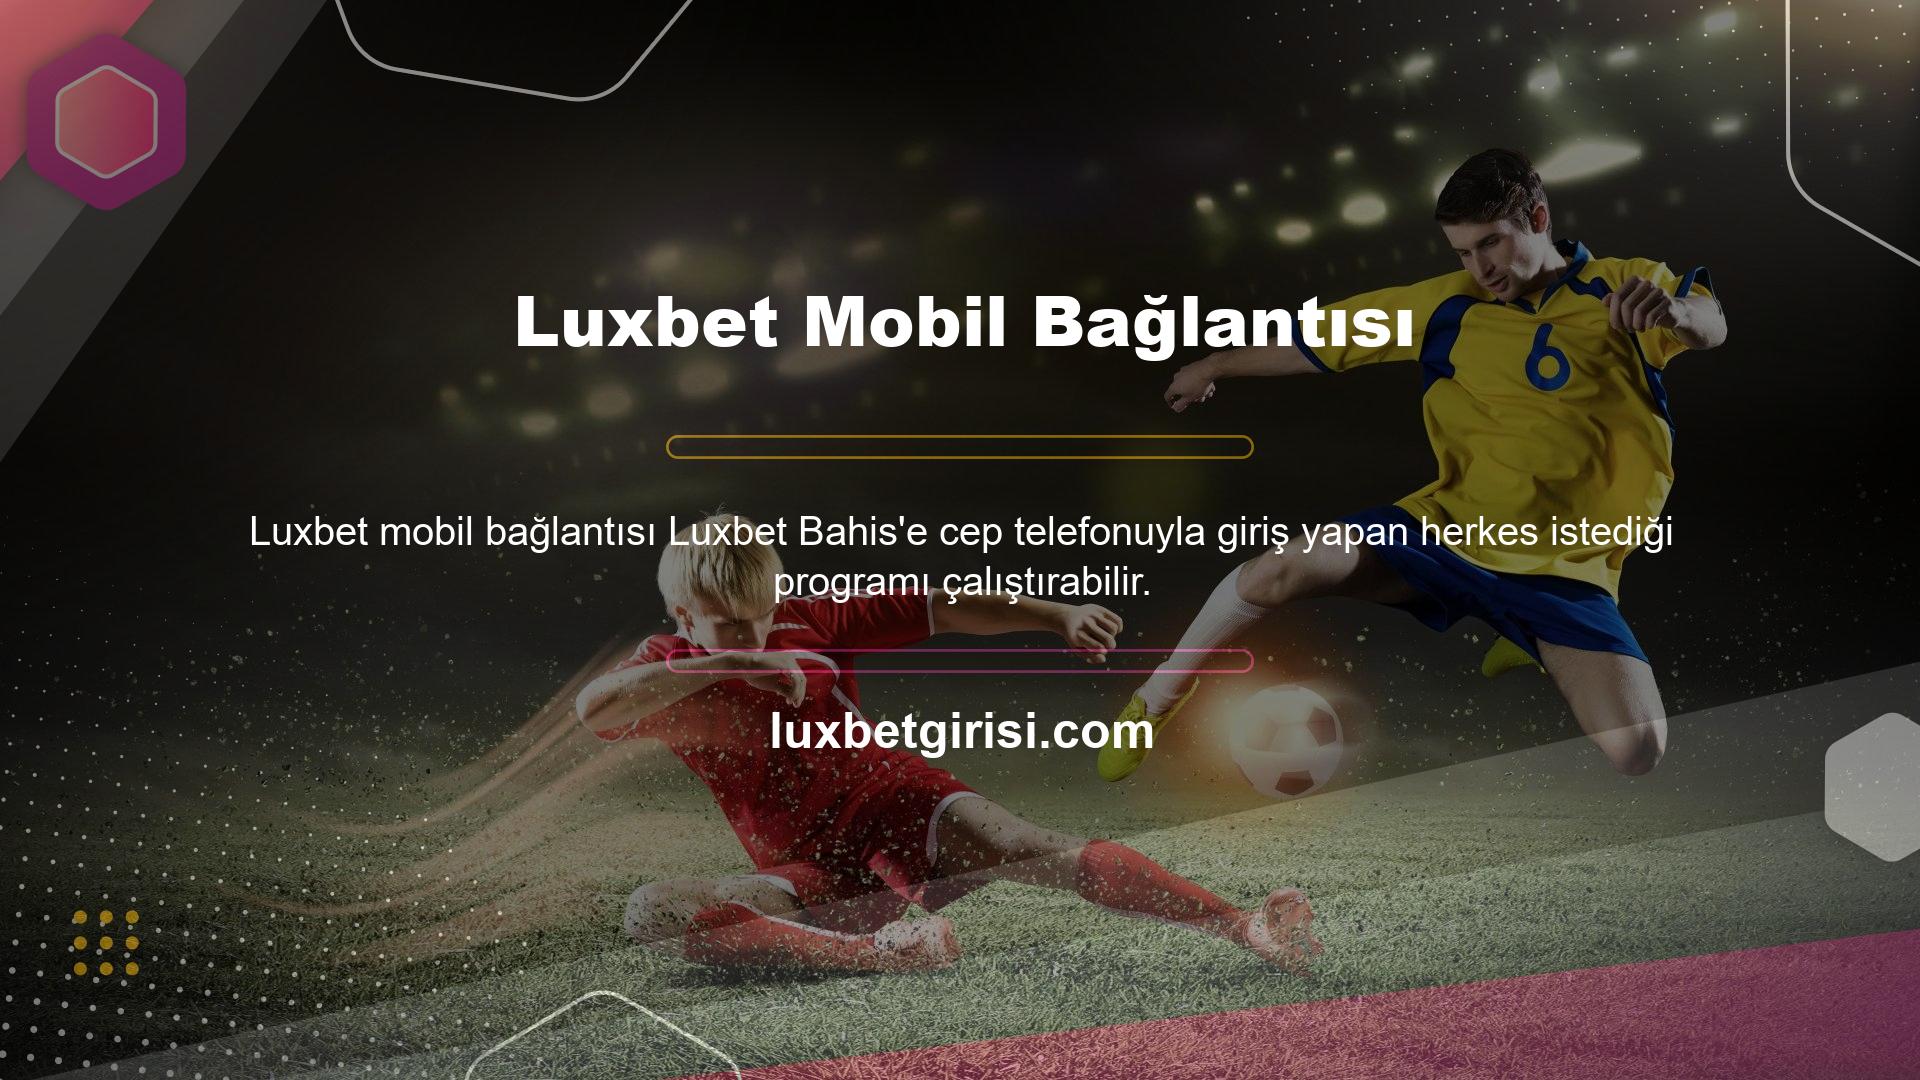 Luxbet Mobil Bağlantısı